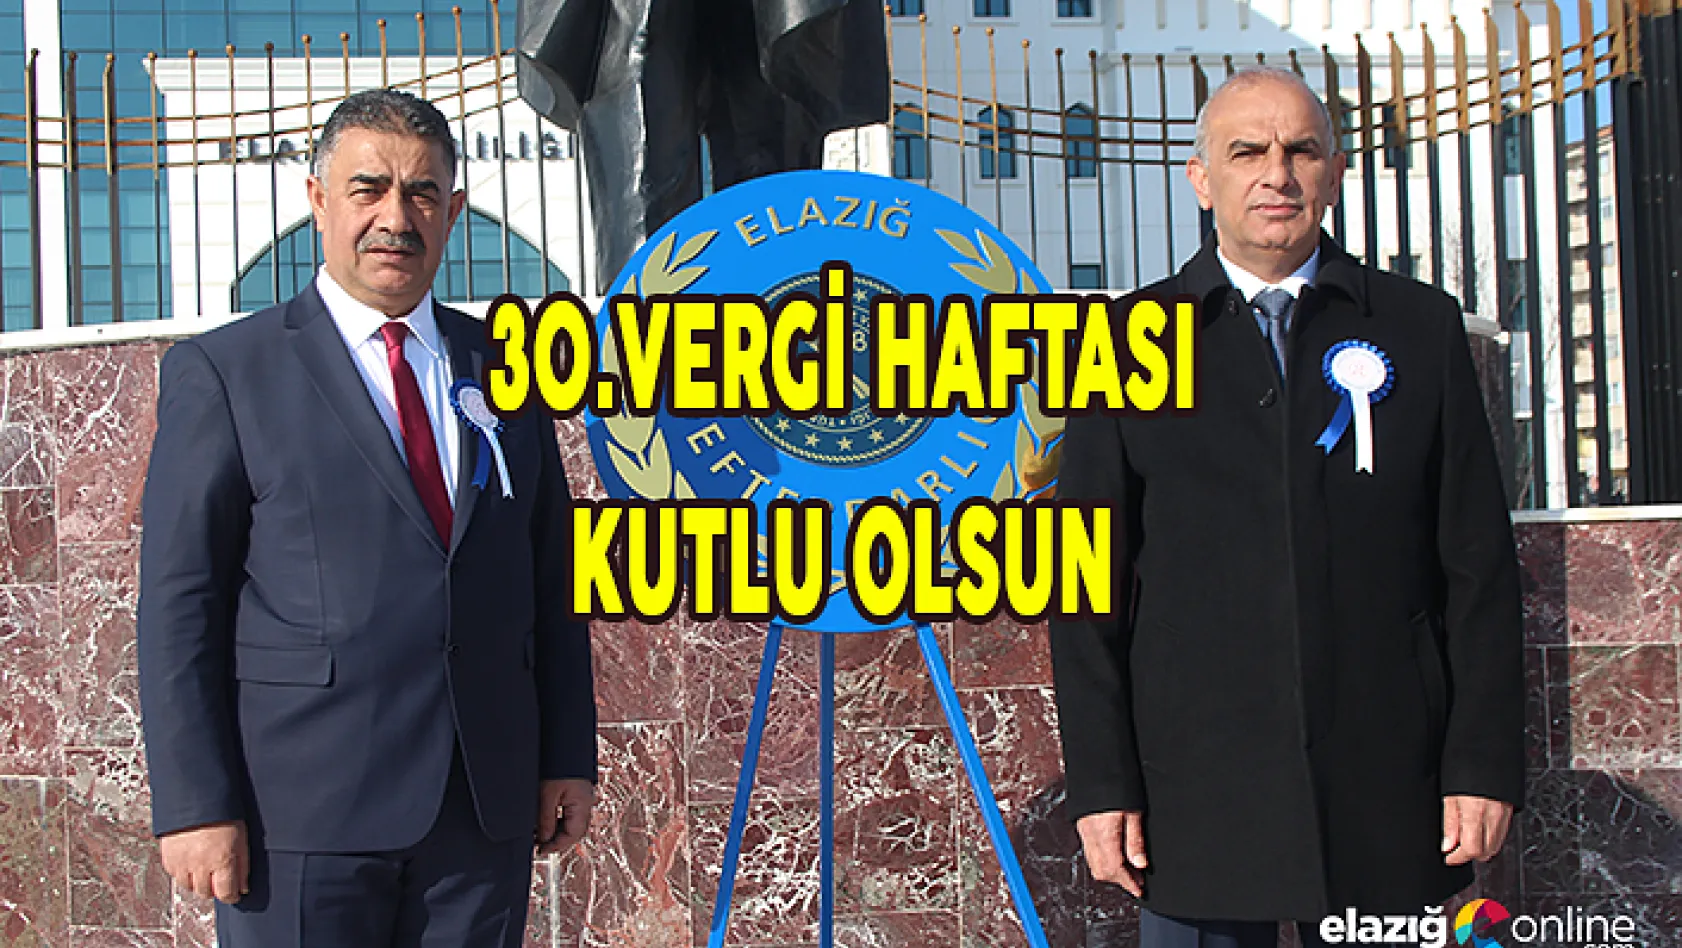 Vergi Haftası etkinlikleri kapsamında Atatürk anıtına çelenk bırakıldı